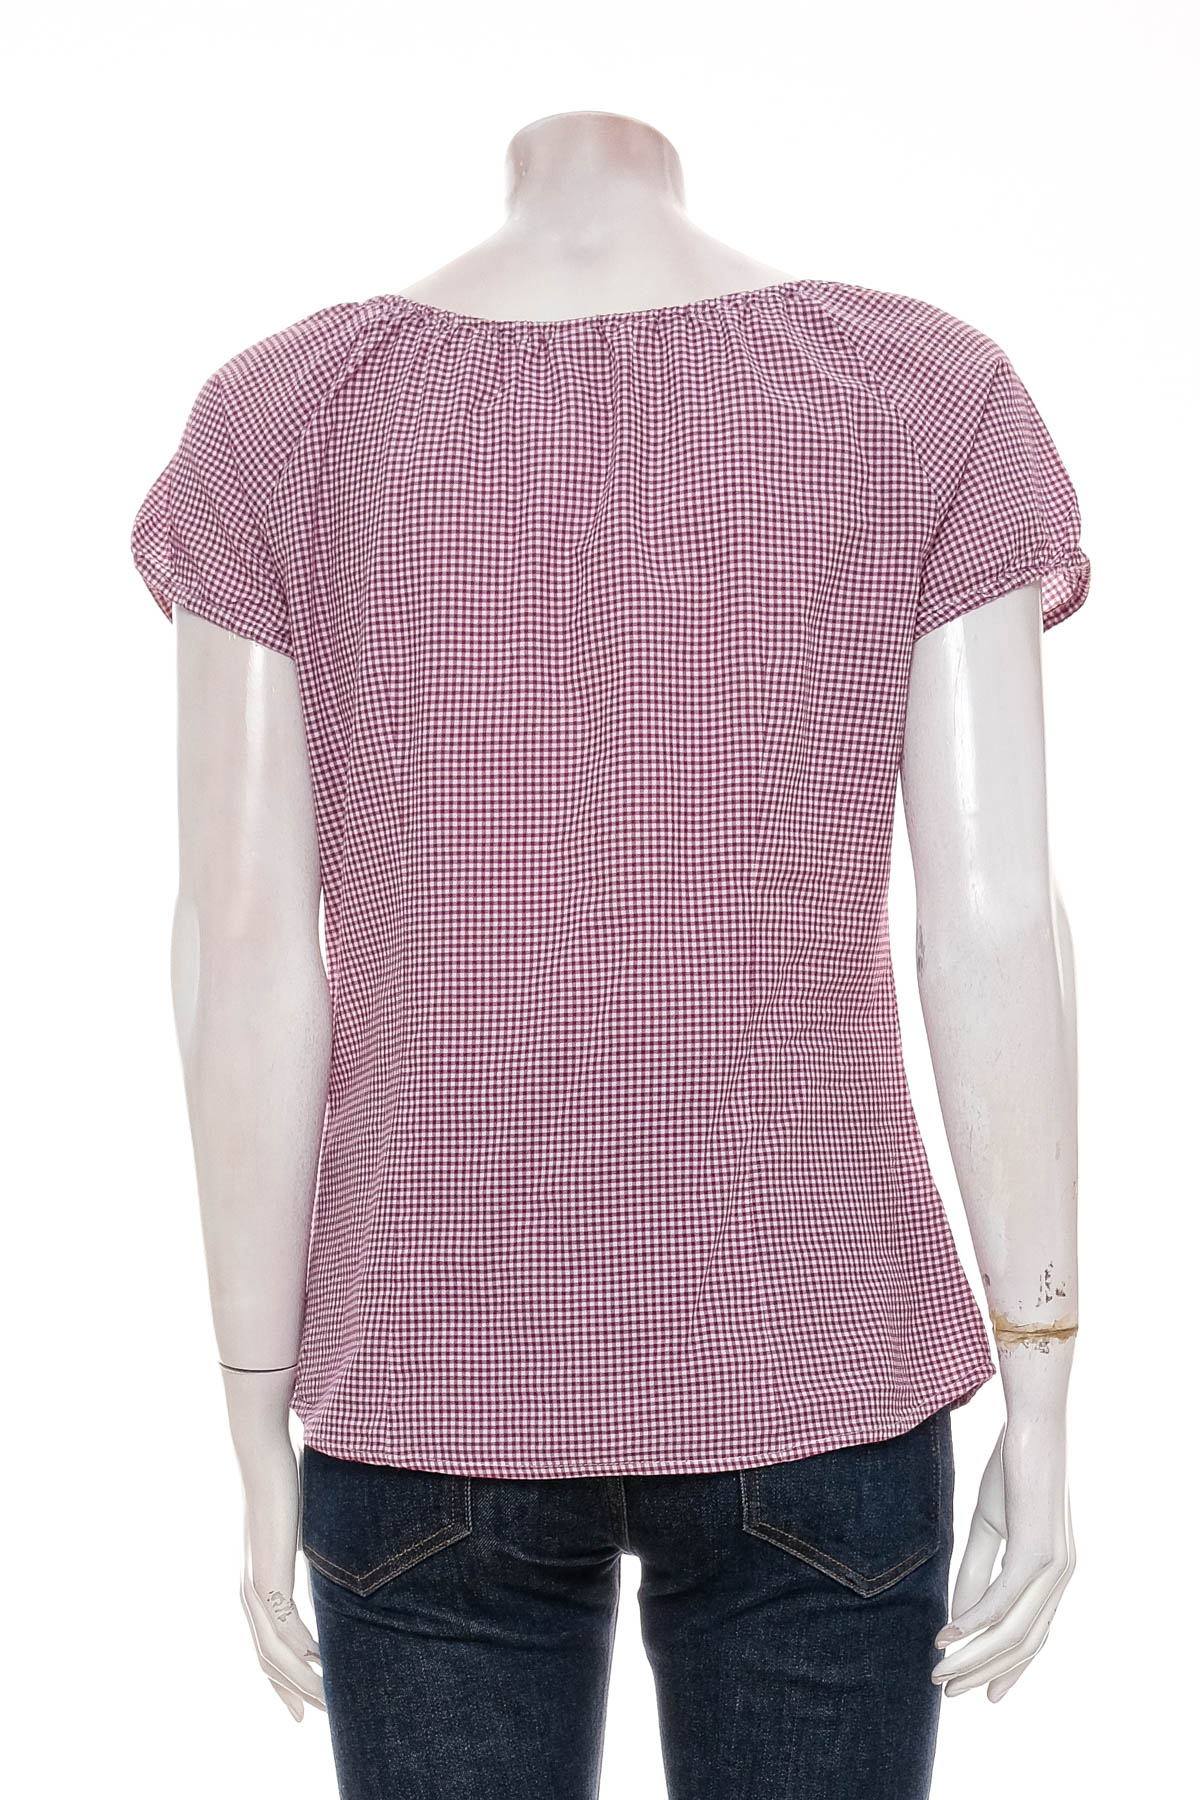 Γυναικείο πουκάμισο - S.Oliver - 1